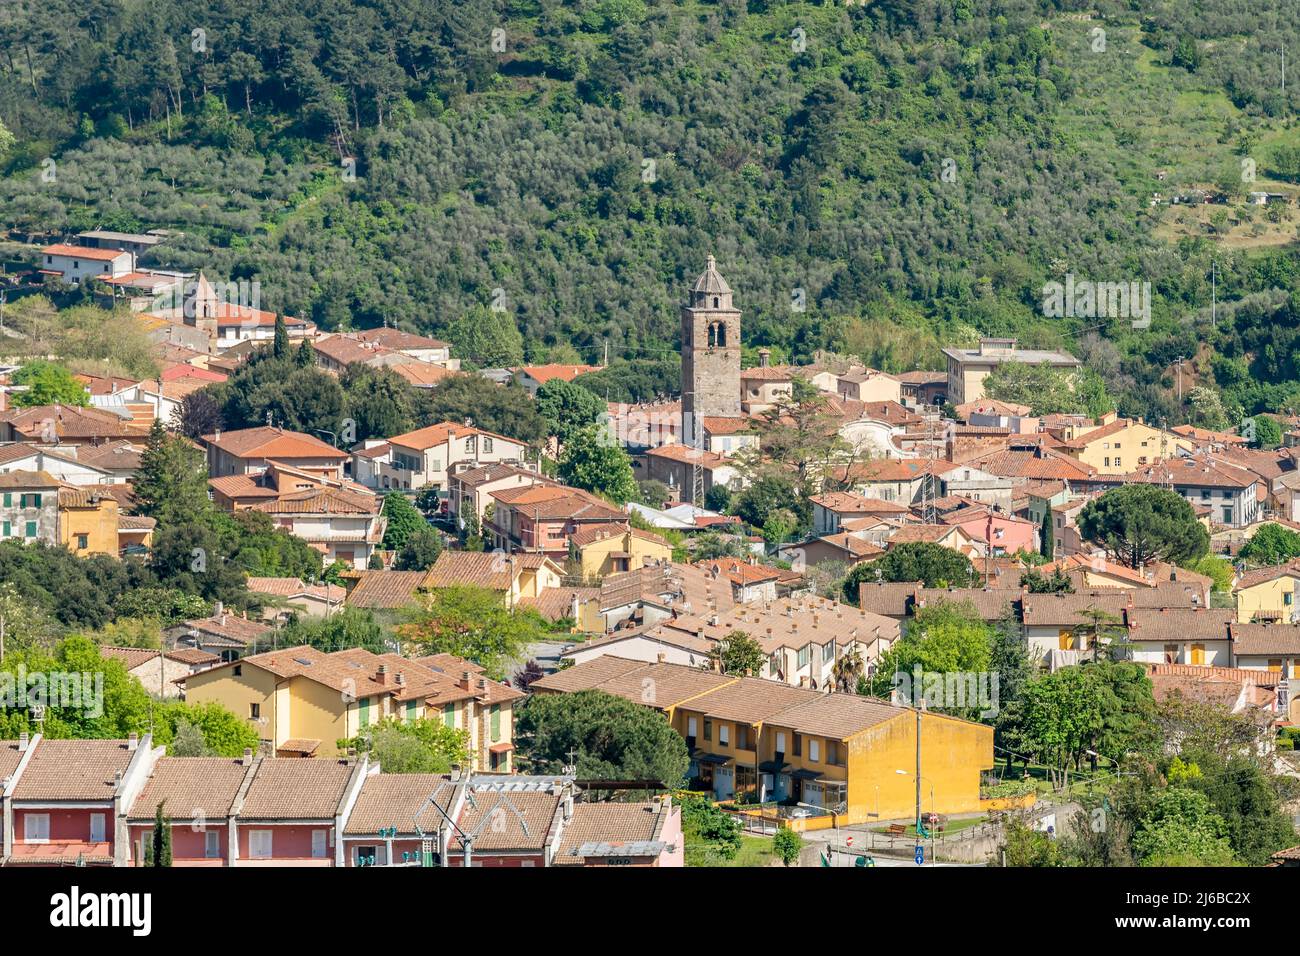 Vista panoramica aerea dell'antico borgo di Buti, Pisa, Italia Foto Stock